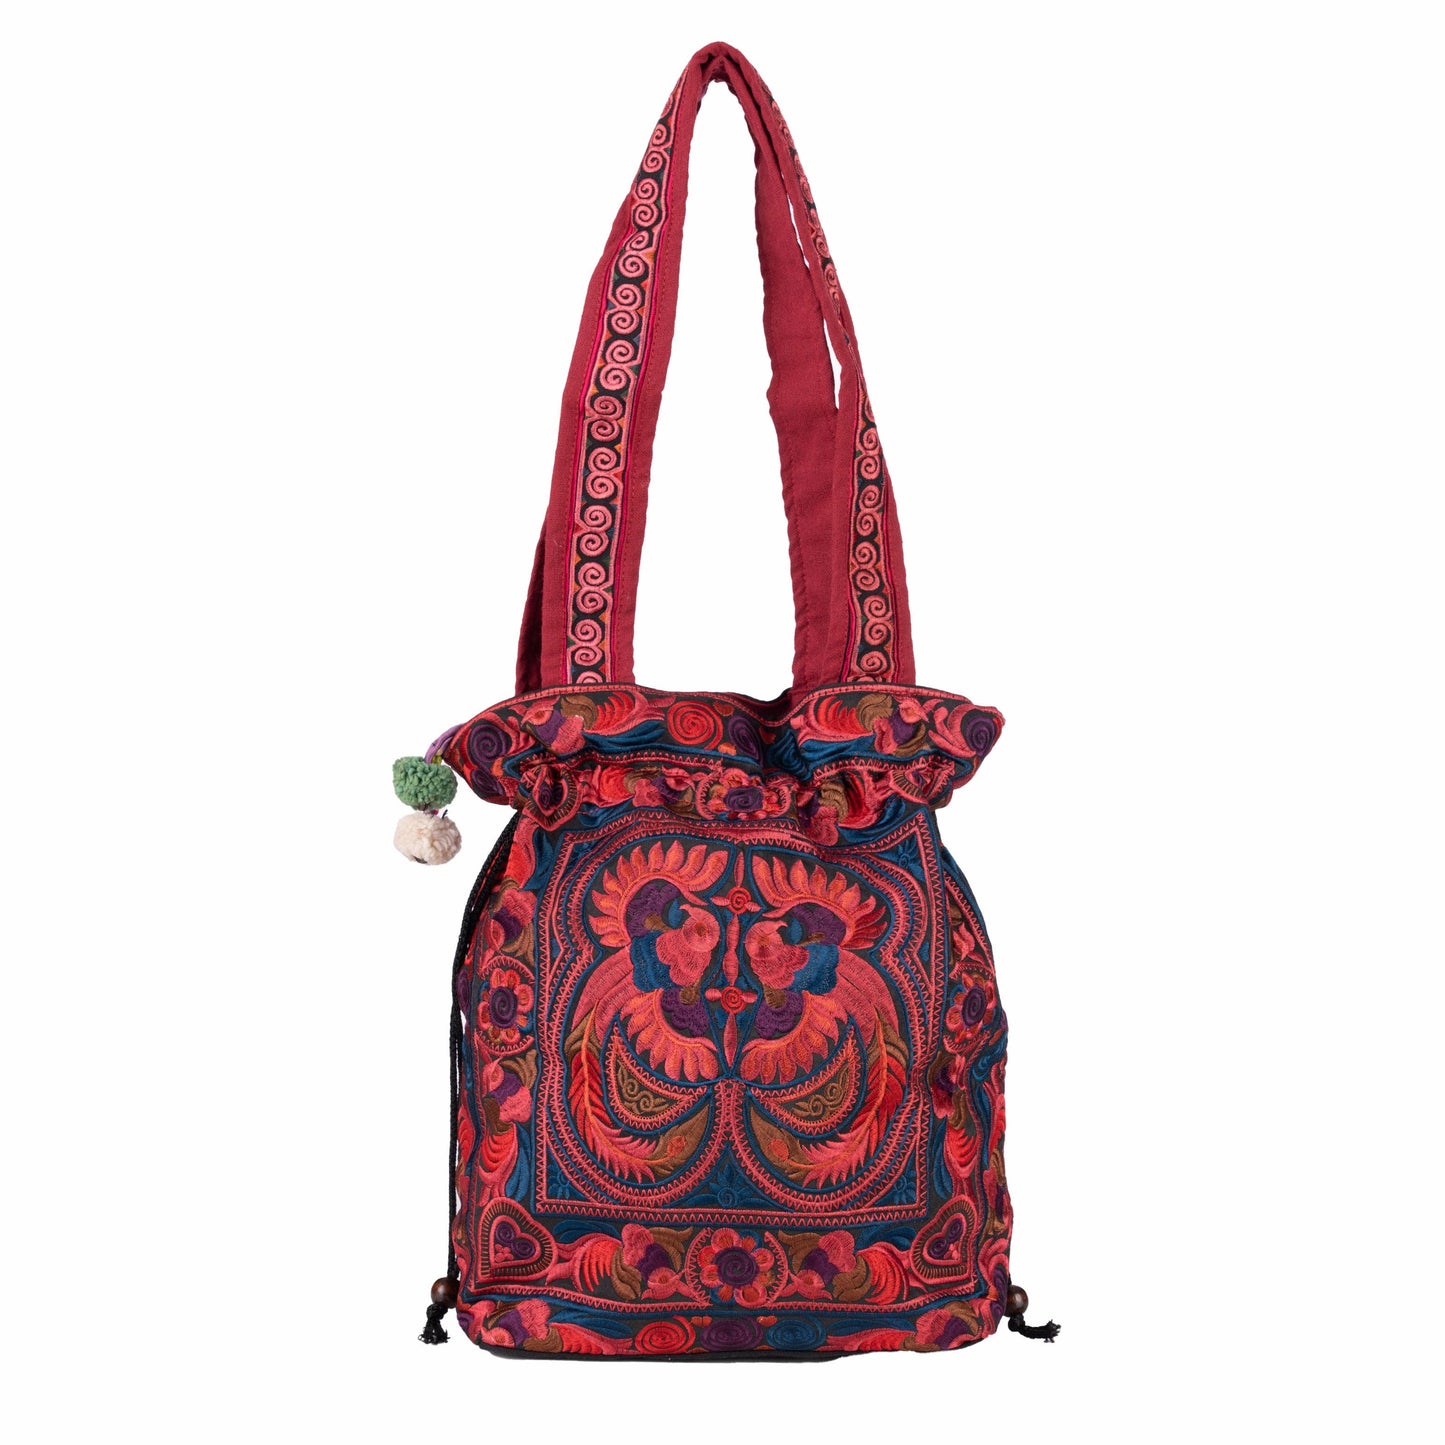 Bag: Drawstring Tote Bag (Various Colors/Designs)